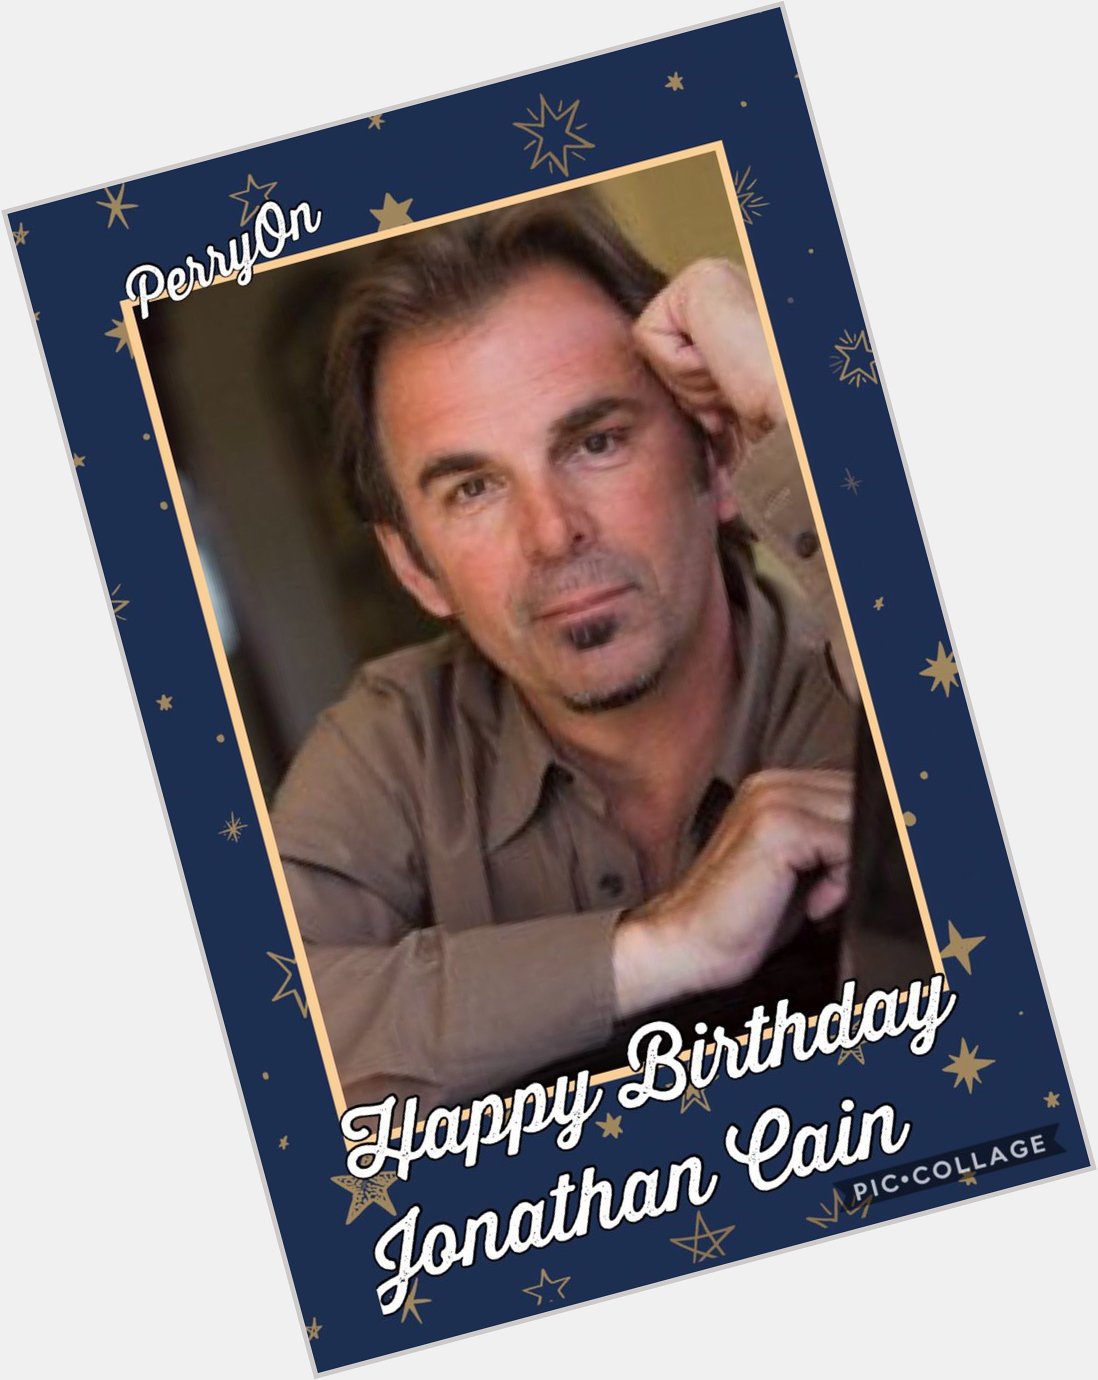 Happy birthday Jonathan Cain  